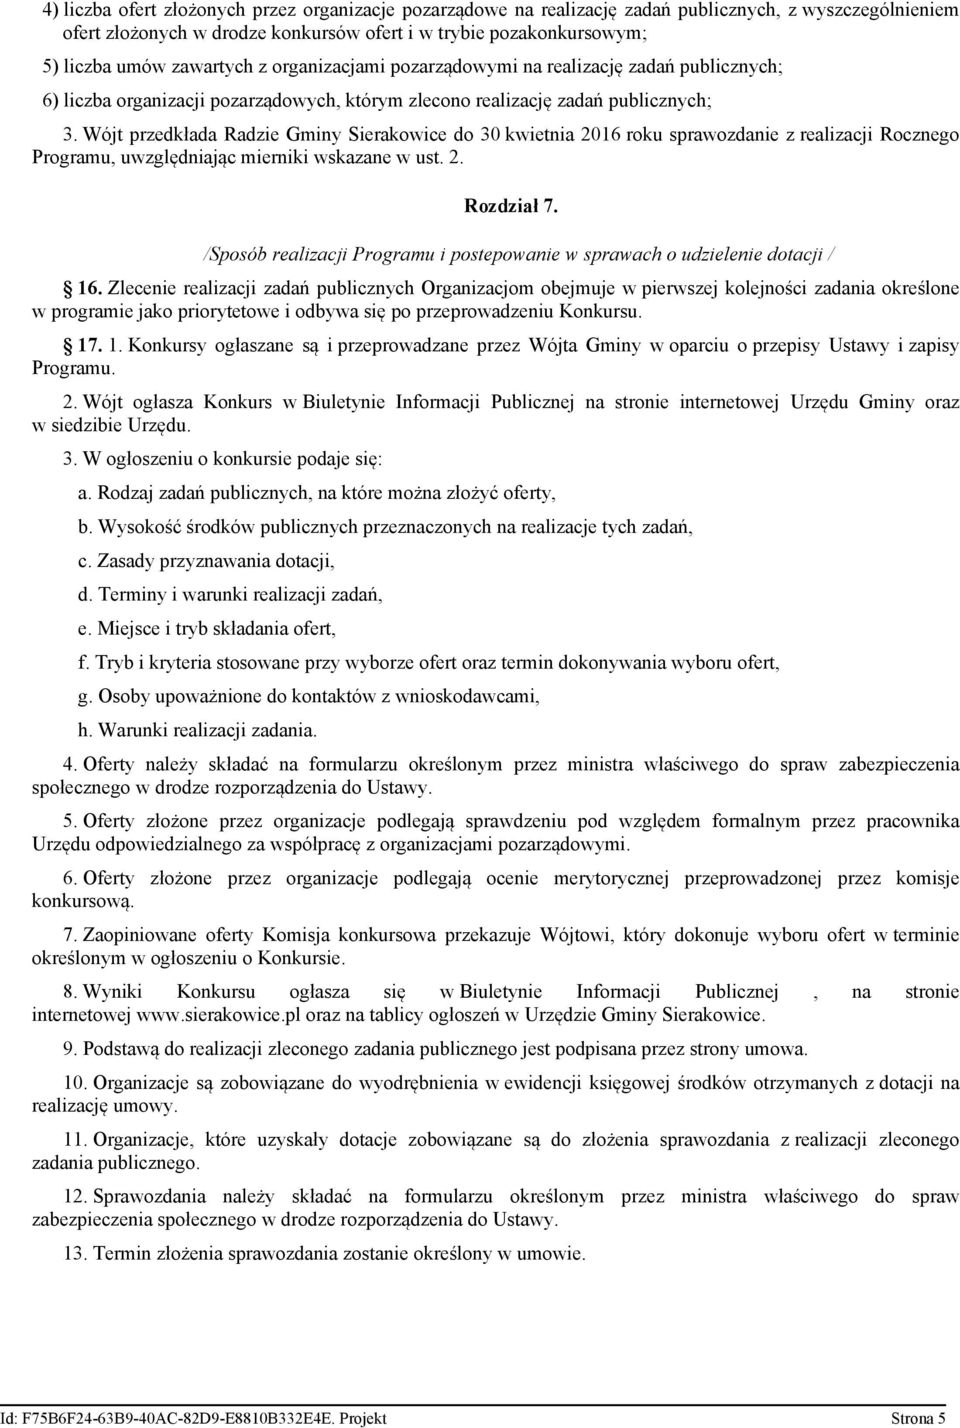 Wójt przedkłada Radzie Gminy Sierakowice do 30 kwietnia 06 roku sprawozdanie z realizacji Rocznego Programu, uwzględniając mierniki wskazane w ust.. Rozdział 7.